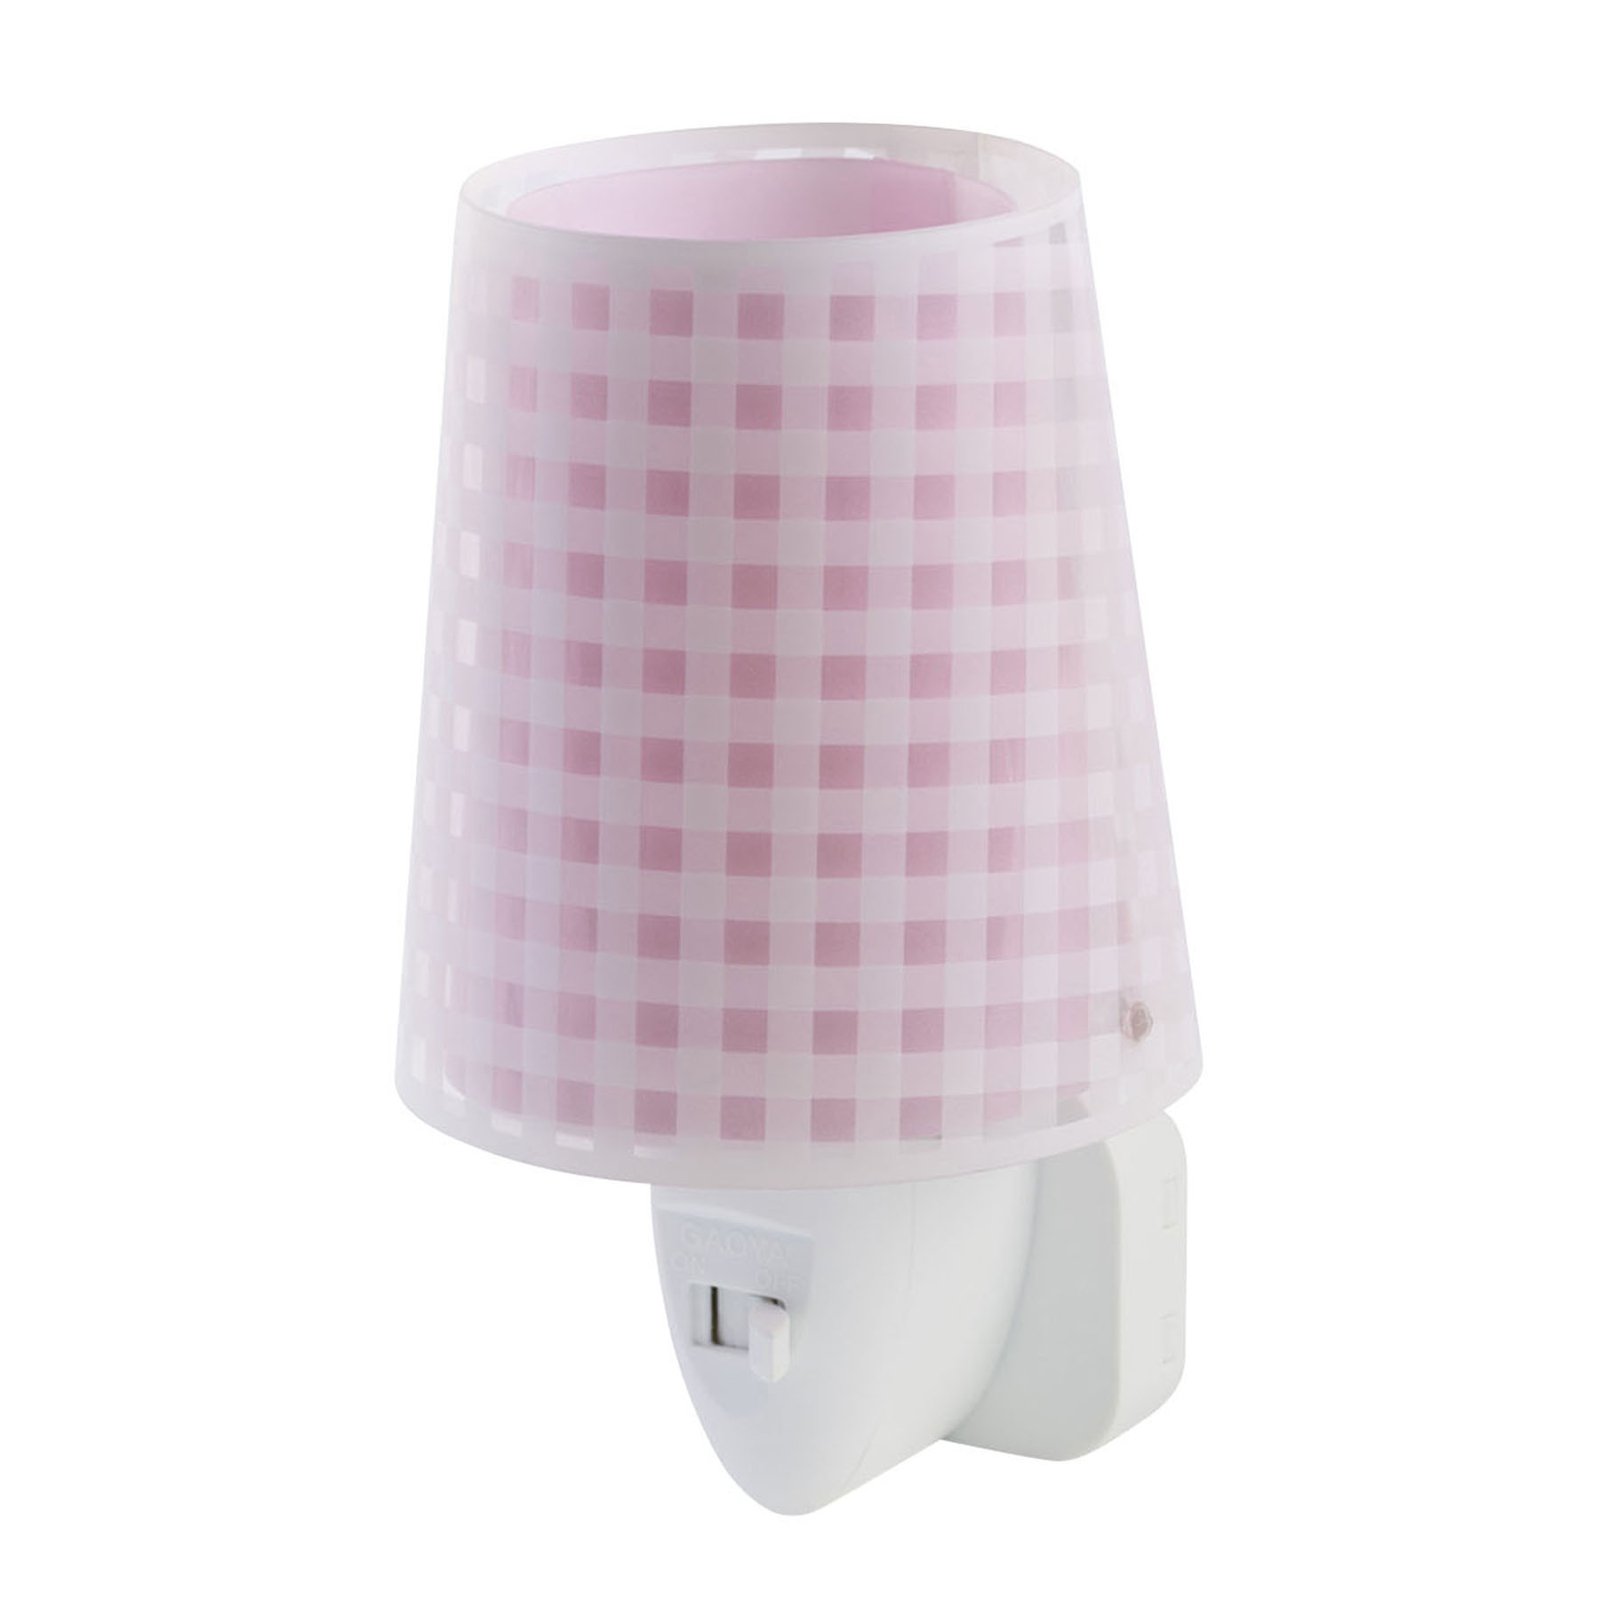 Lampka nocna LED Vichy w kolorze różowym